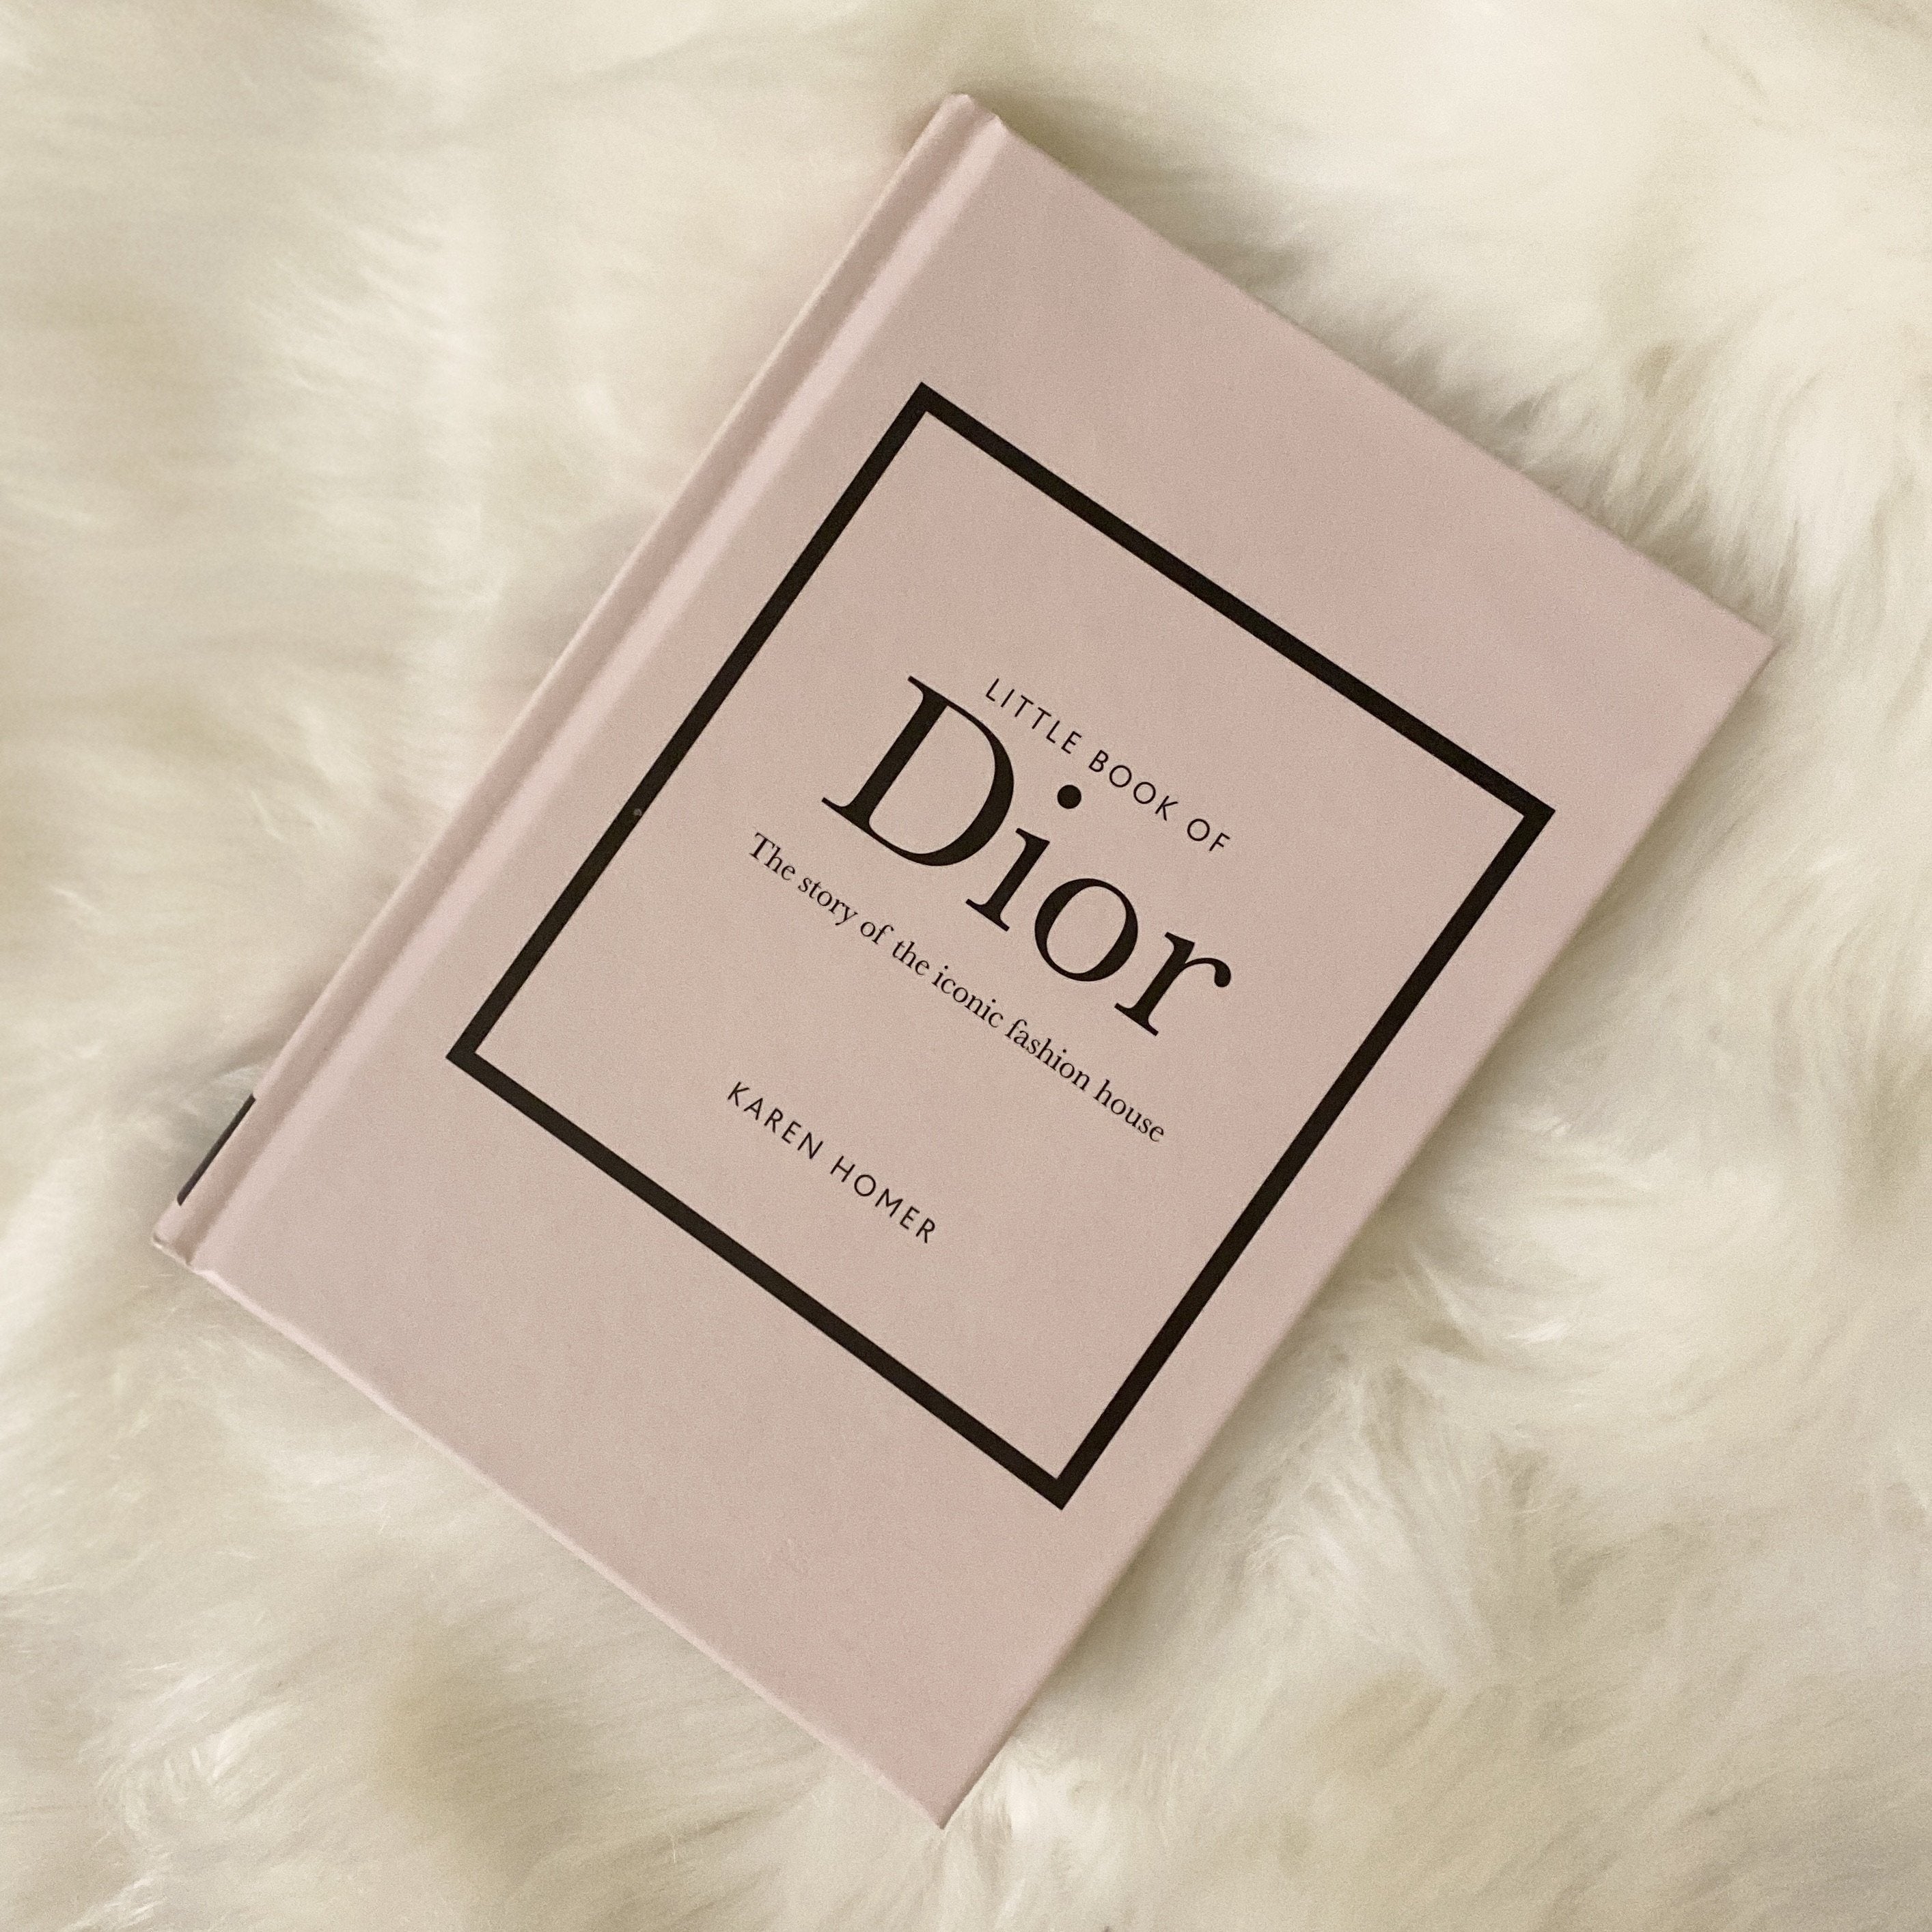 หนังสือ-มาใหม่] Little Book of Hermes: The story of the iconic fashion house  - Karen Homer chanel dior English book